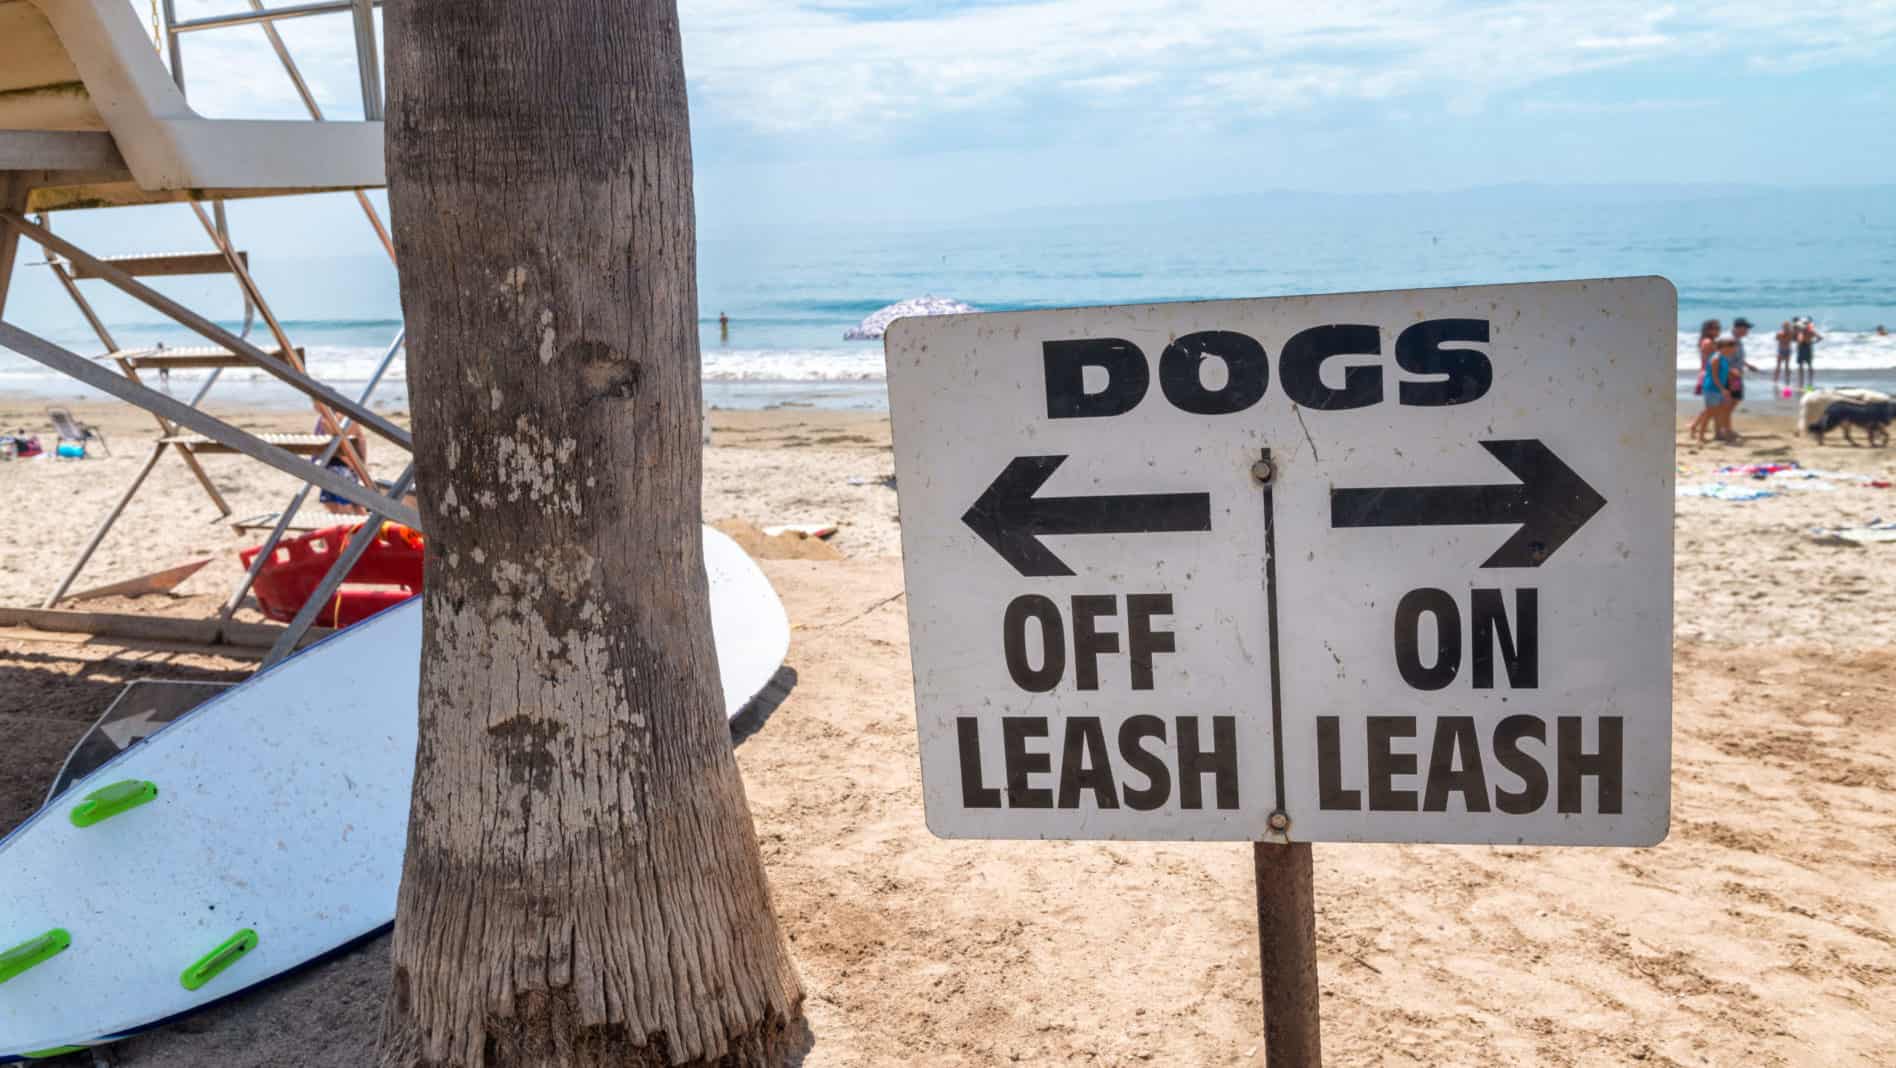 Dog leash sign on beach